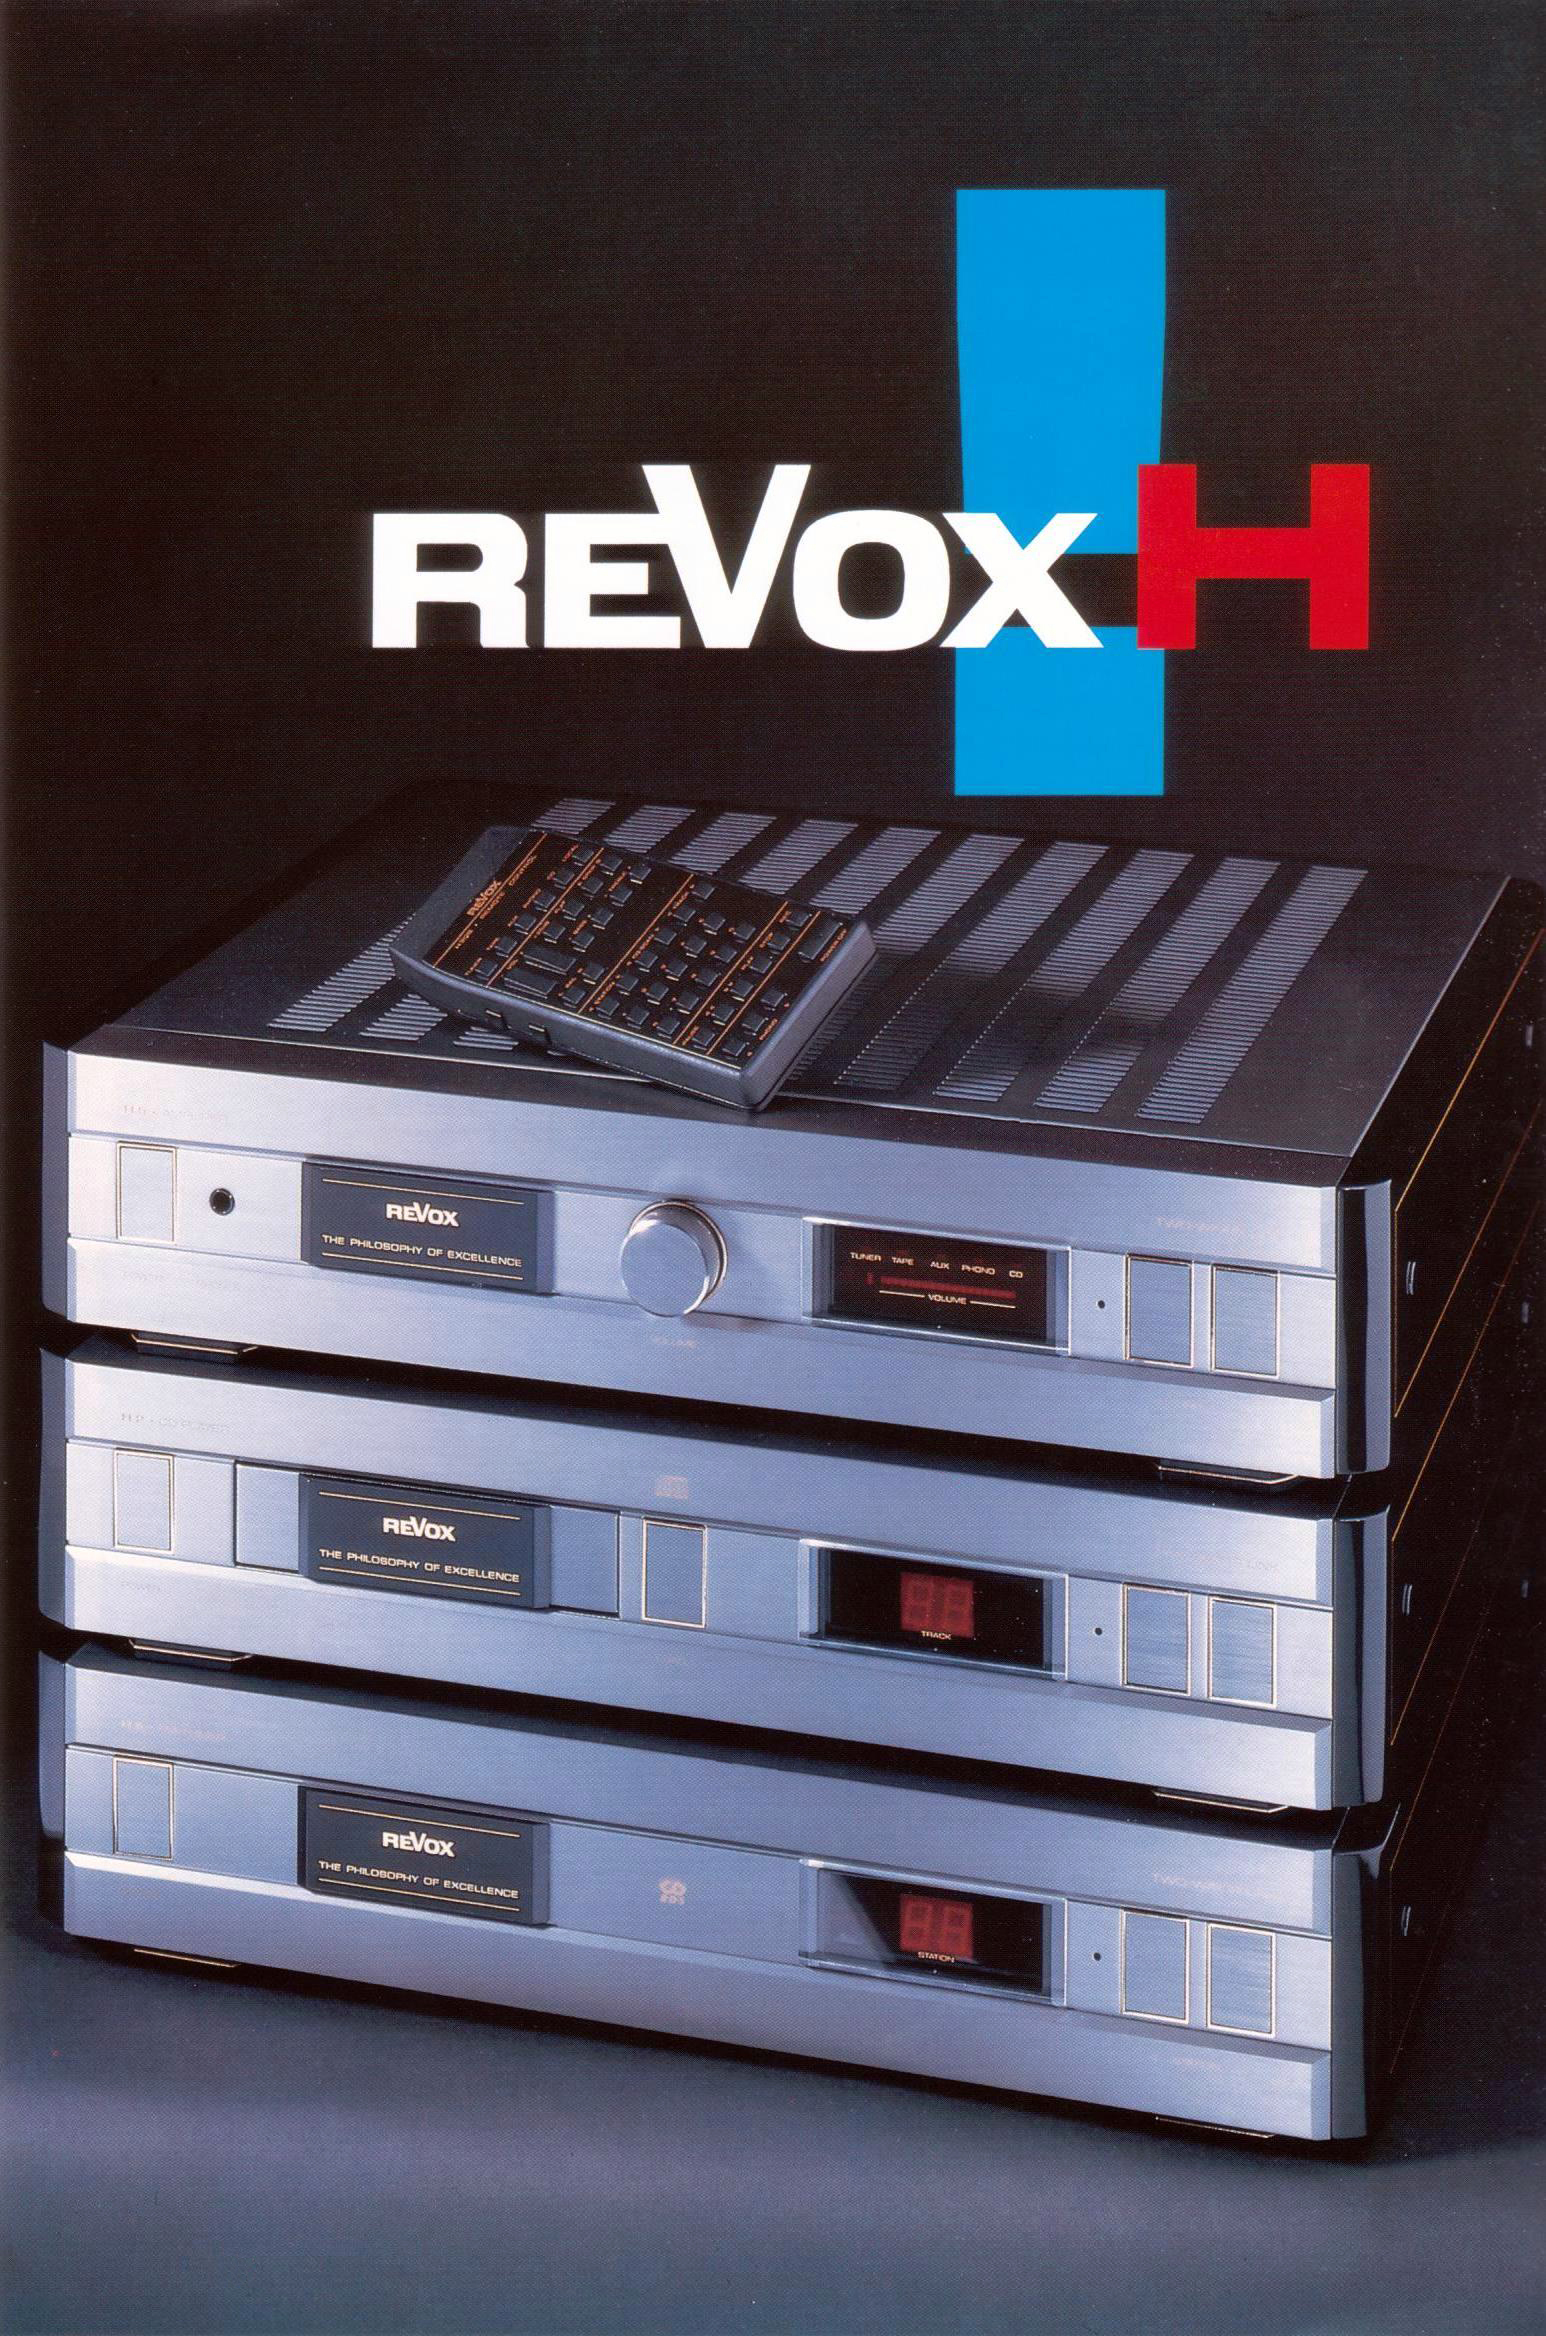 Revox H-Serie-Prospekt-1990.jpg